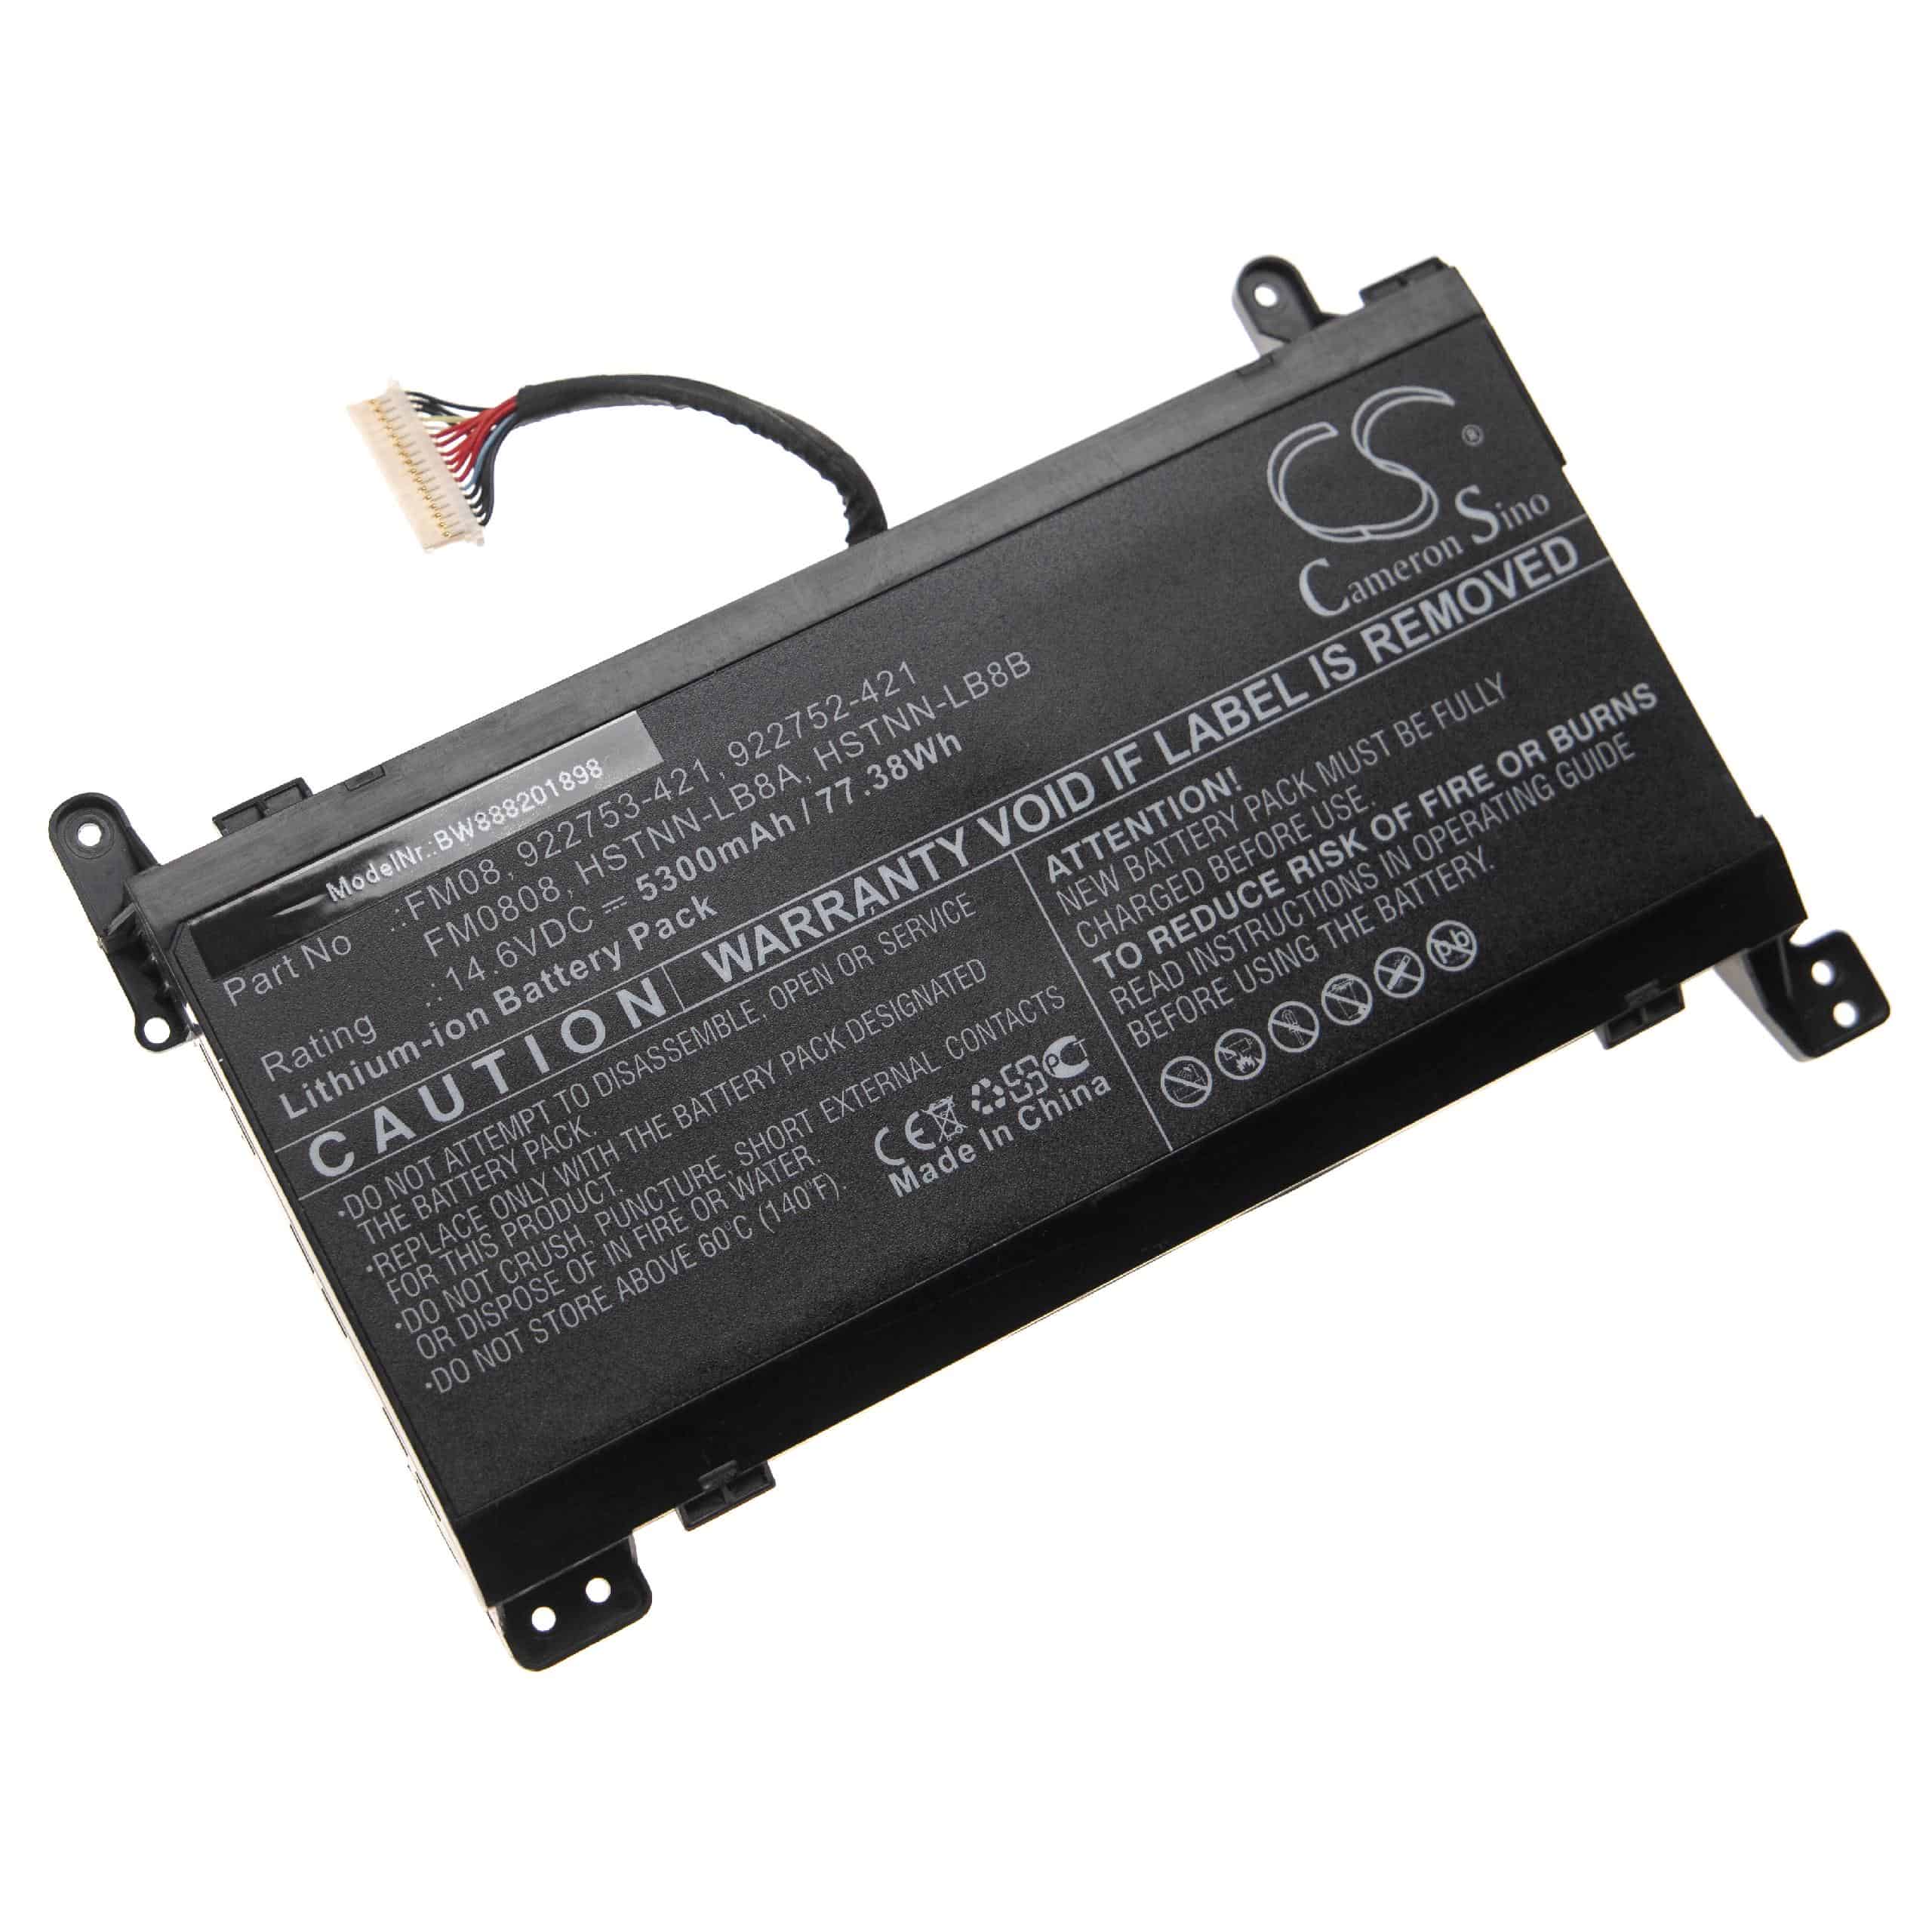 Batterie remplace HP 922753-421, 922976-855, 922752-421 pour ordinateur portable - 5300mAh 14,6V Li-ion, noir